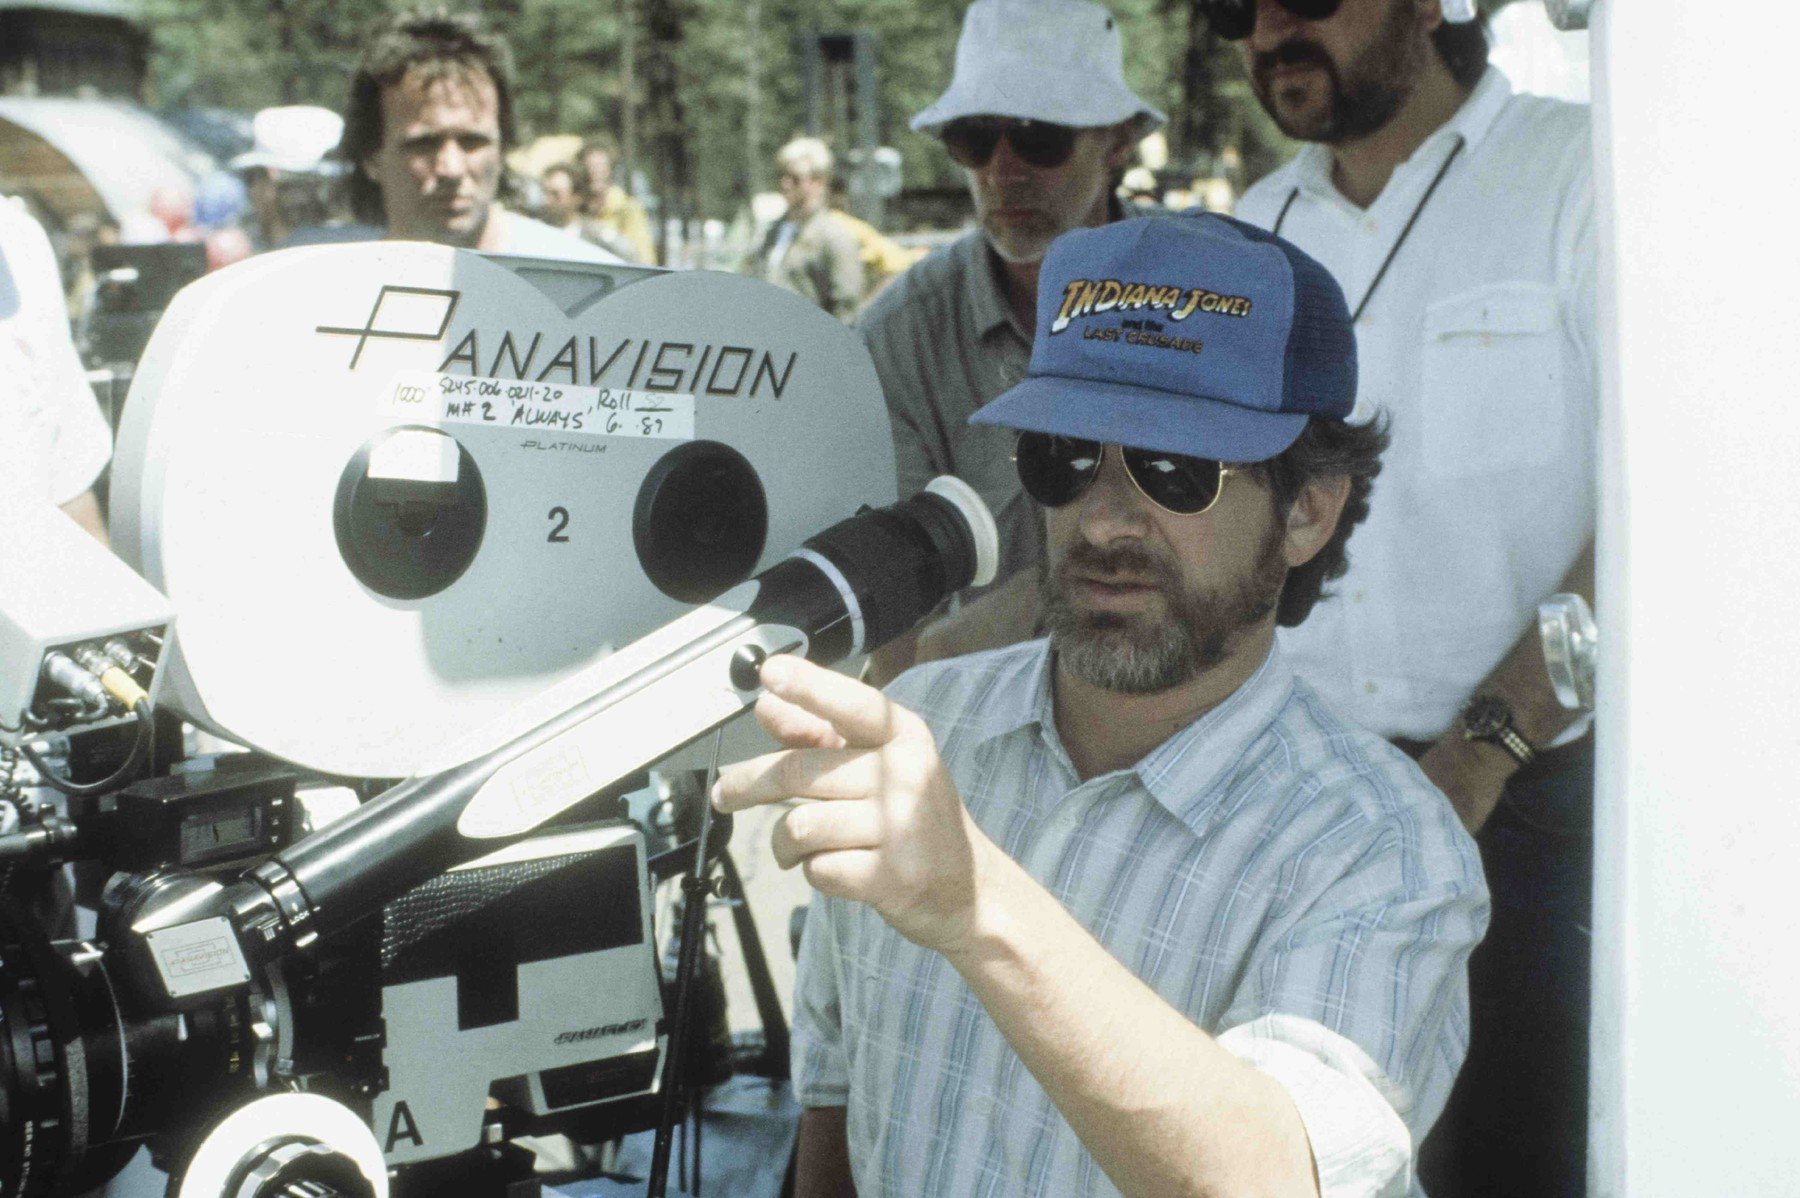 Folytatást kap Steven Spielberg legjobb filmje, a rajongóknak még sincs oka az örömre